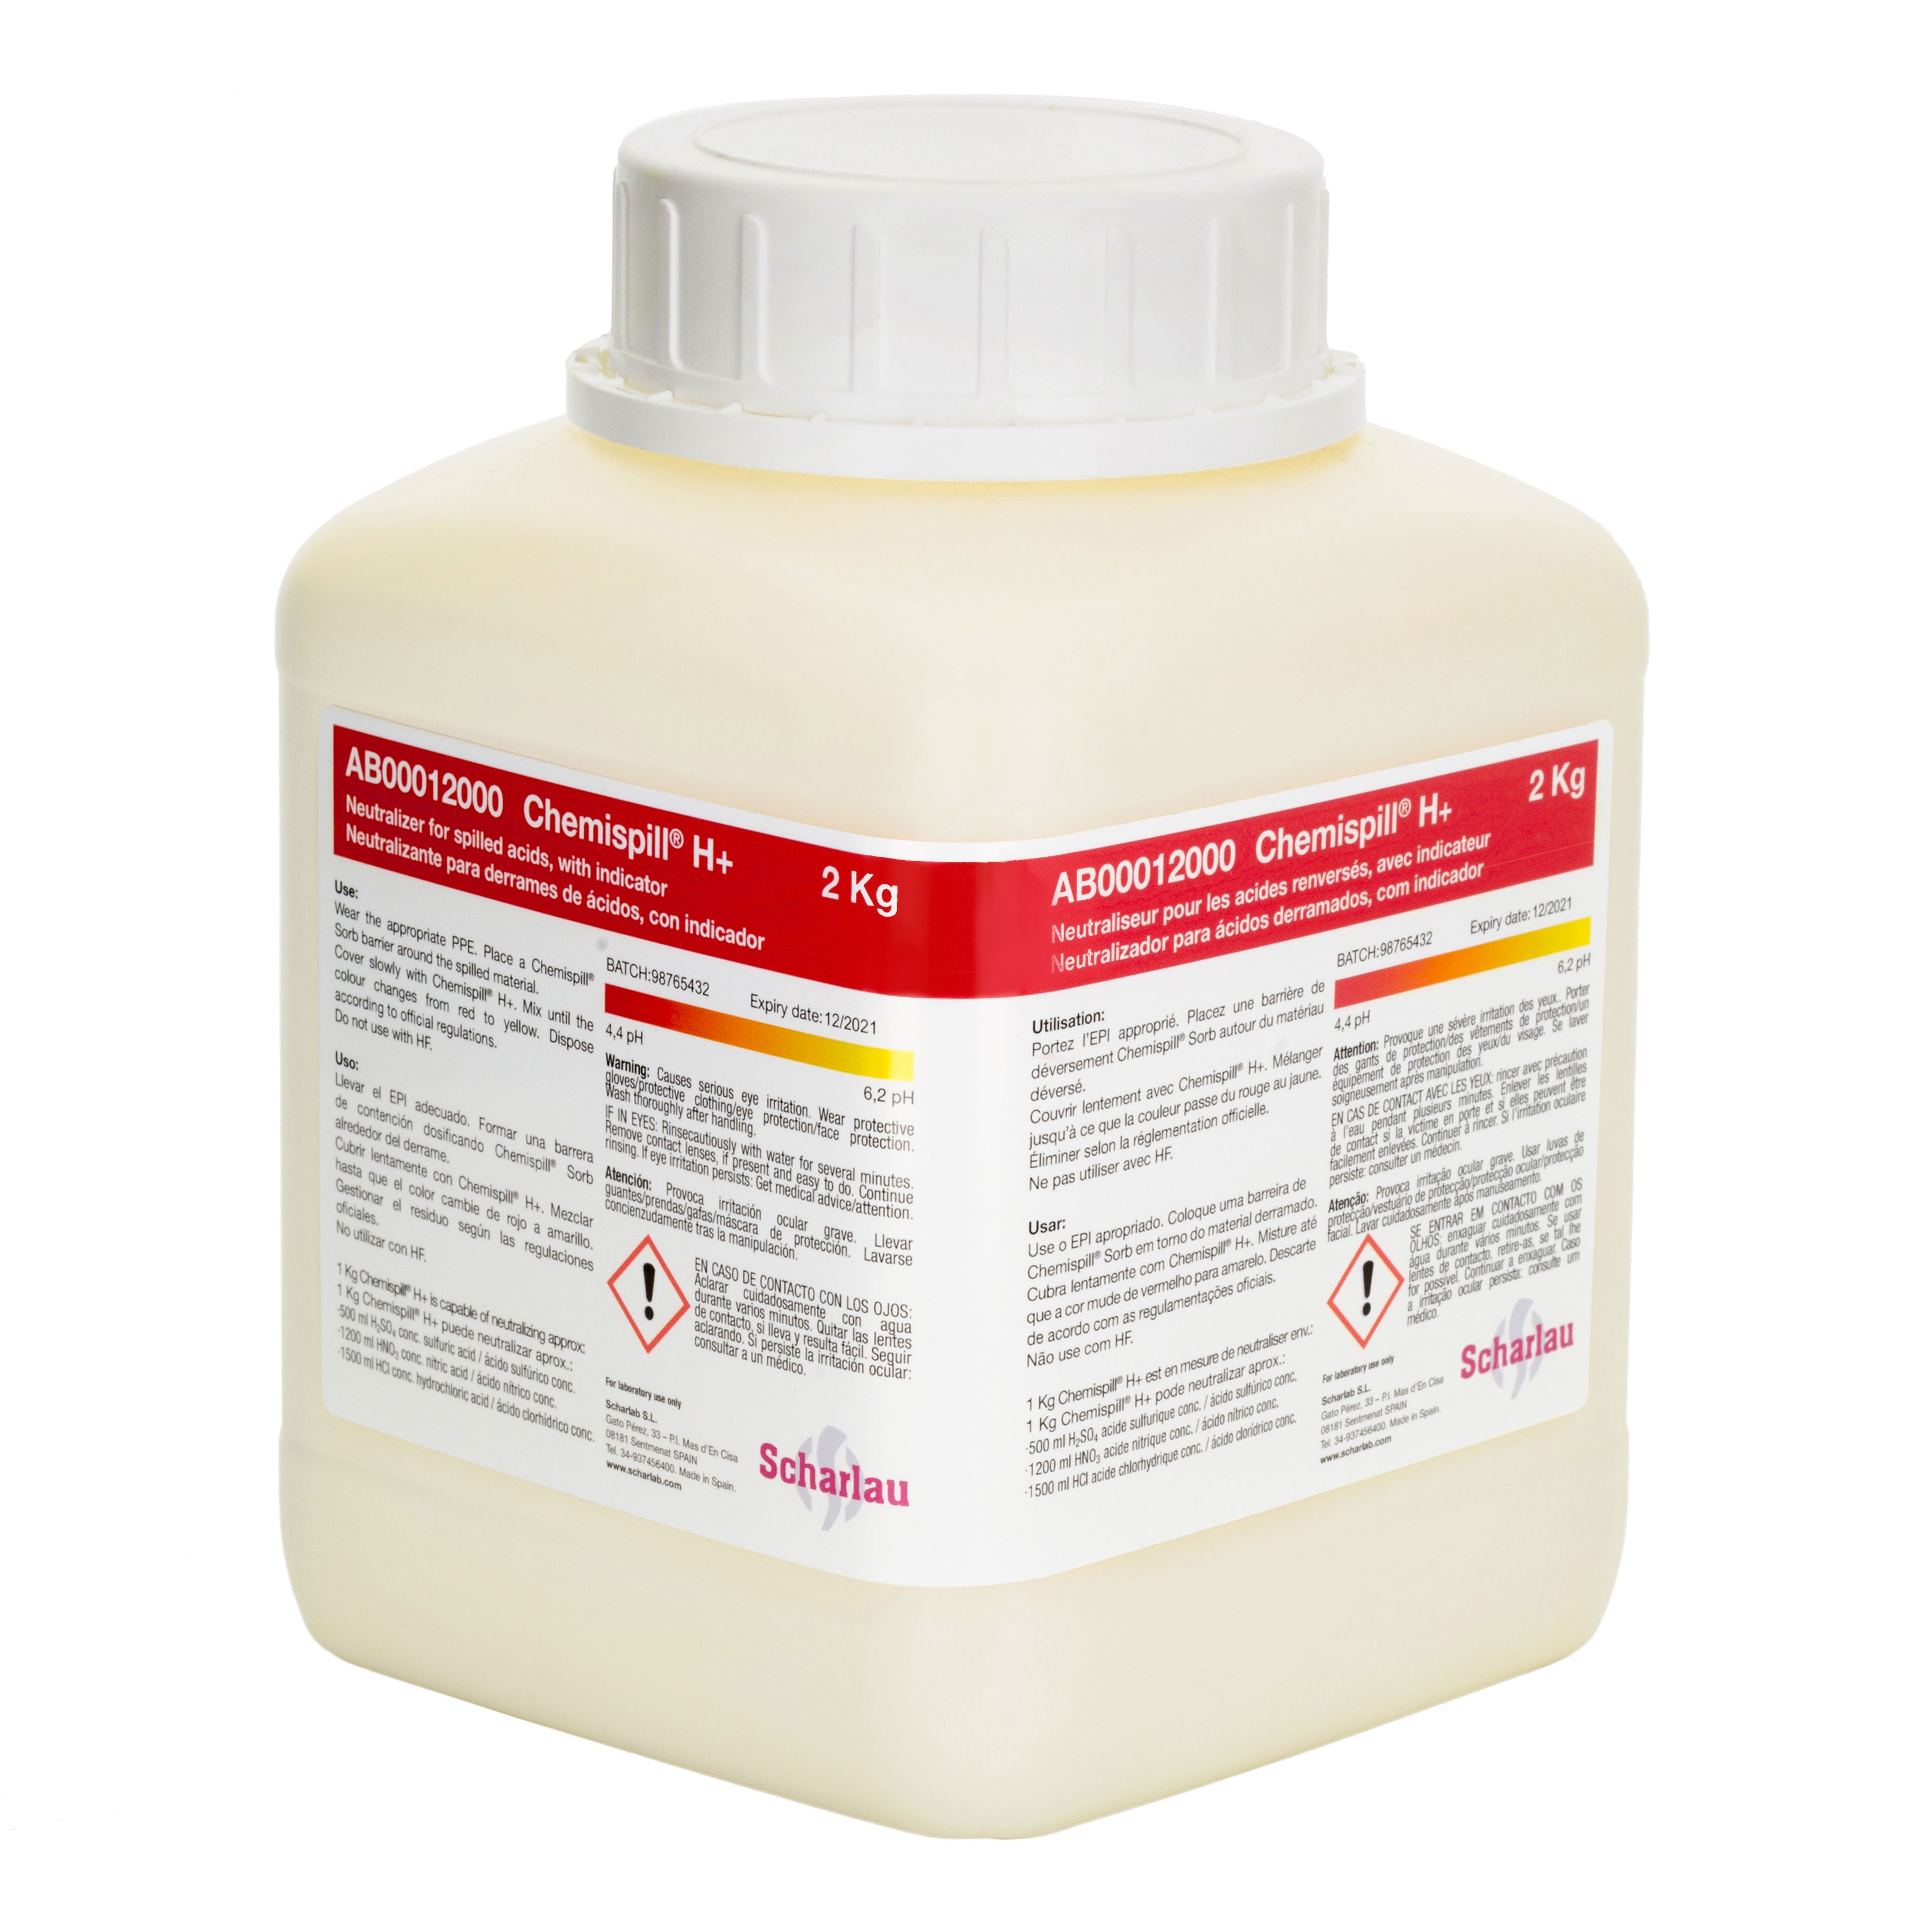 Chemispill® H+, absorbente y neutralizante para derrames de ácidos, con indicador